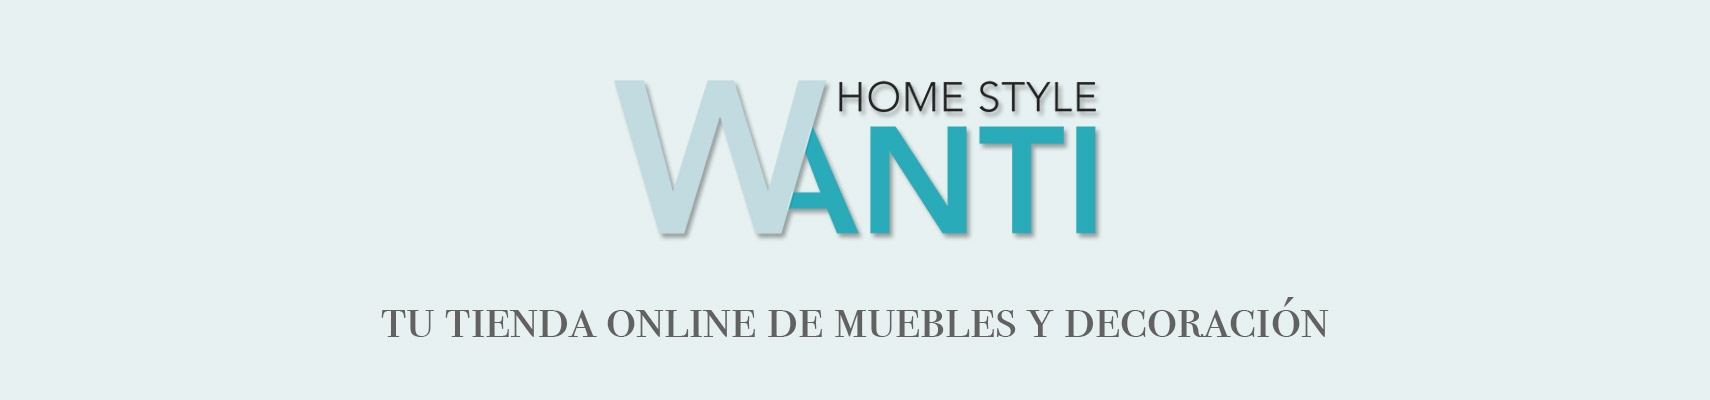 WANTI Home Style - Tu tienda online de muebles y decoración.